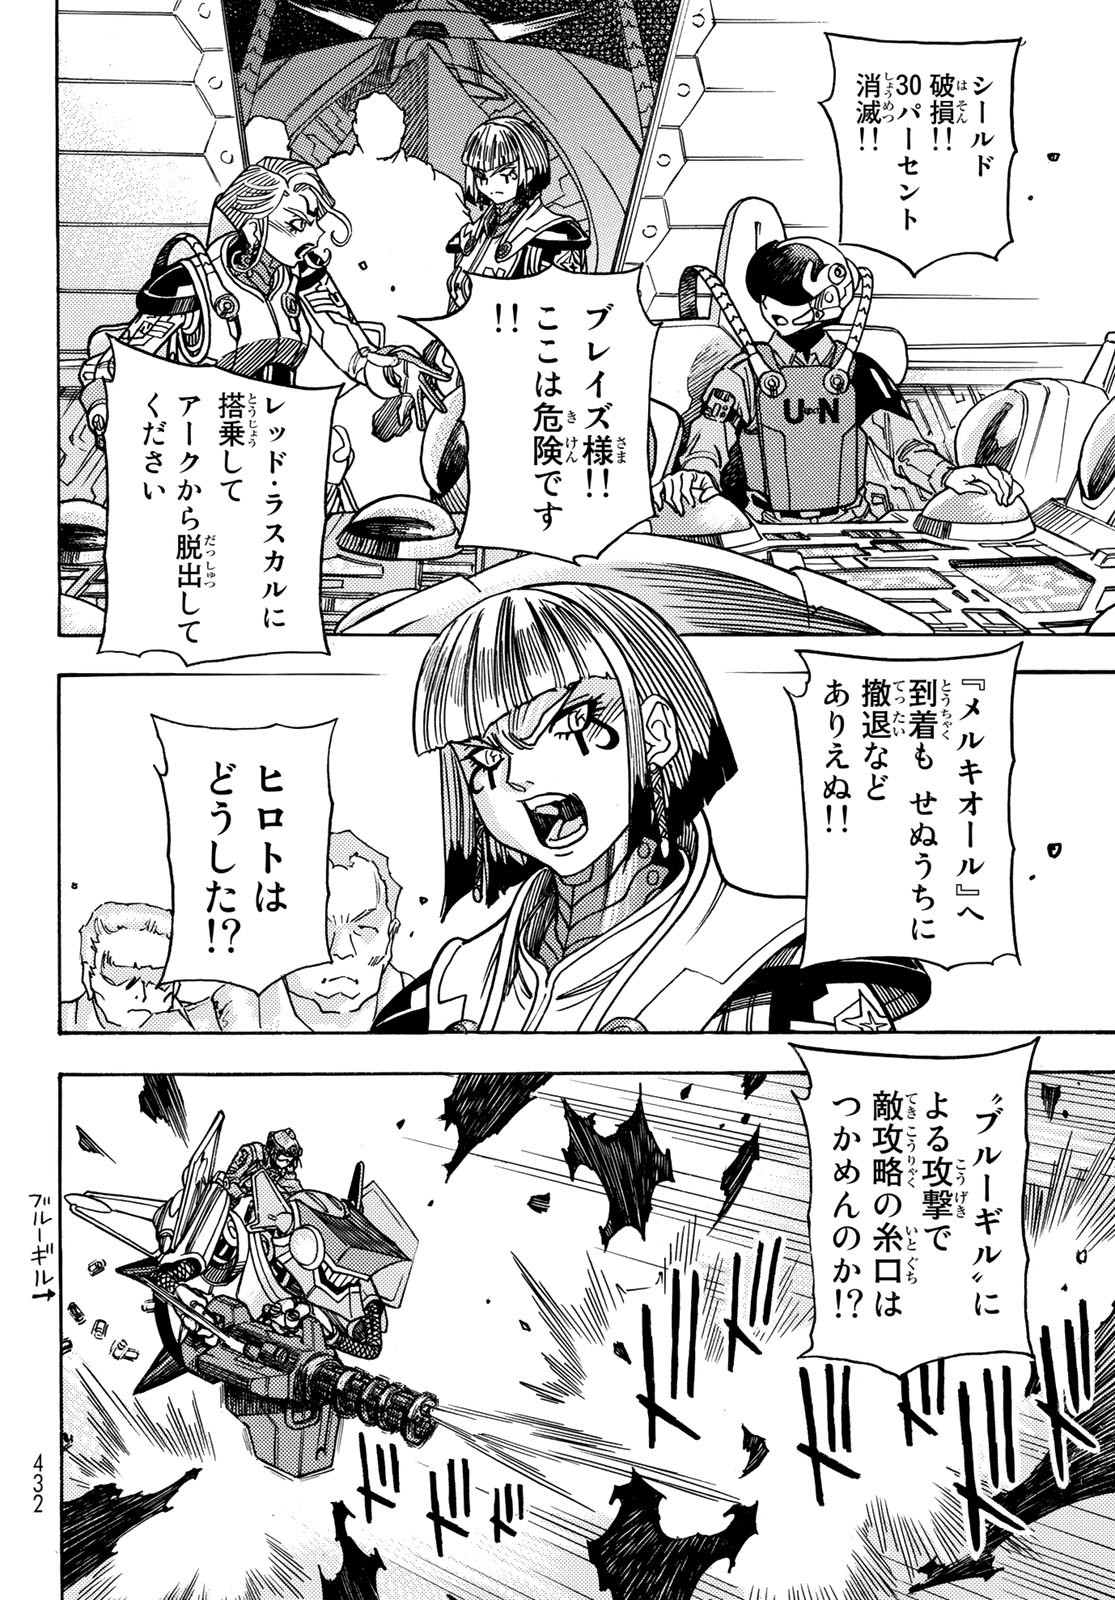 Mugou no Schnell Gear: Chikyuugai Kisouka AI - Chapter 47 - Page 10